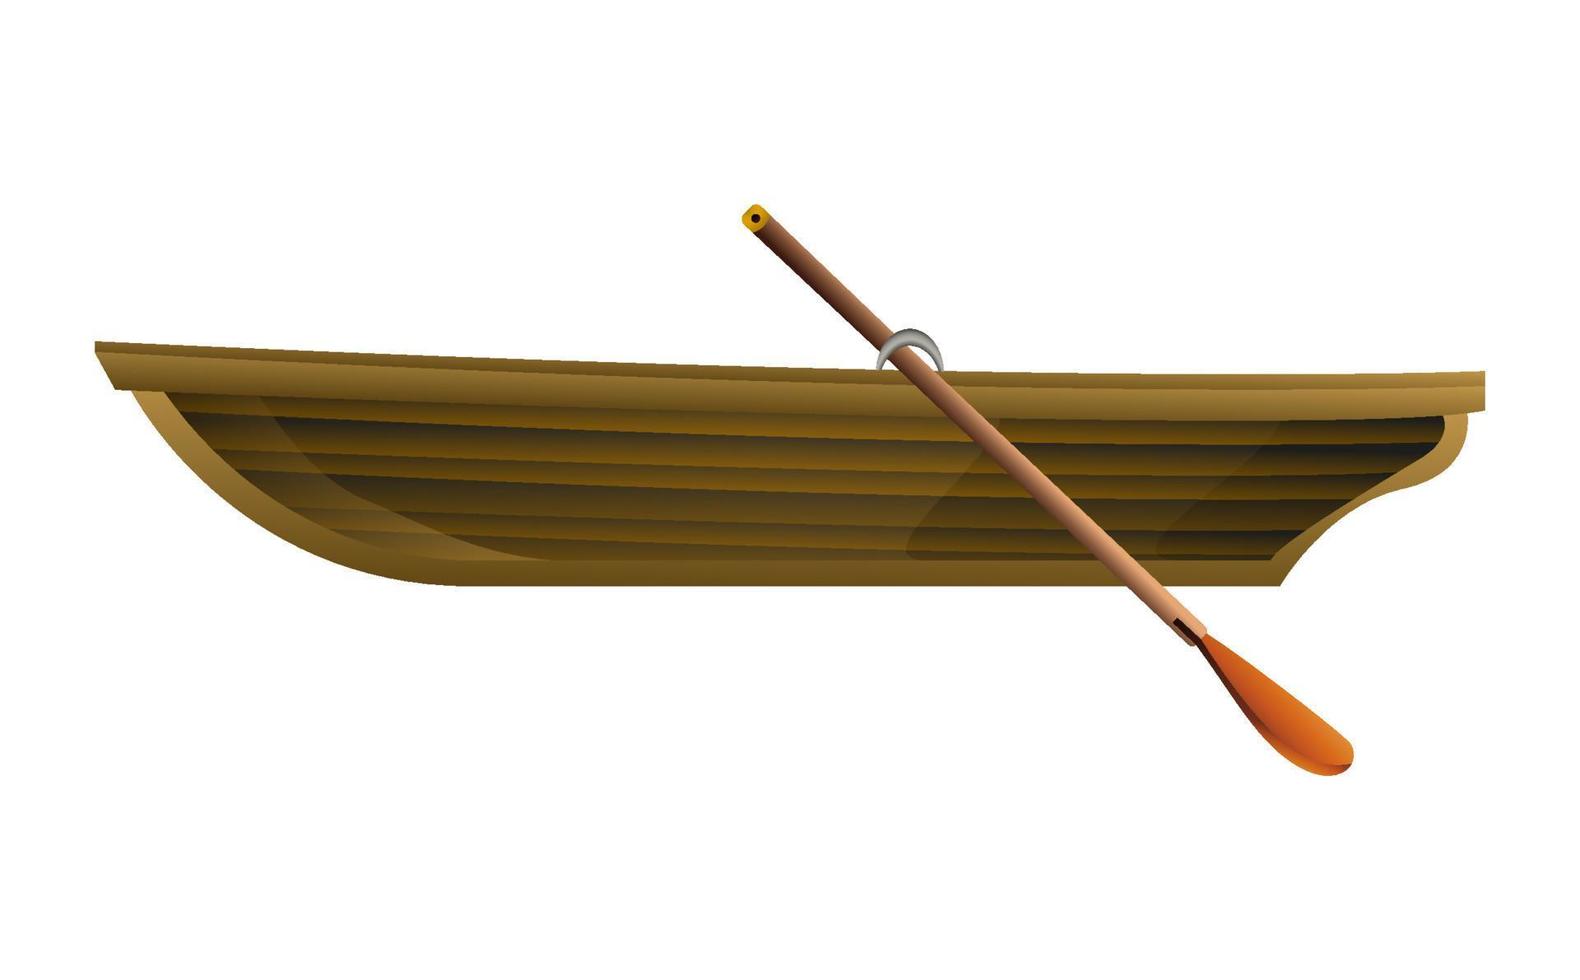 bateau en bois dans un style réaliste. barque à rames. contour vector illustration isolé sur fond blanc.